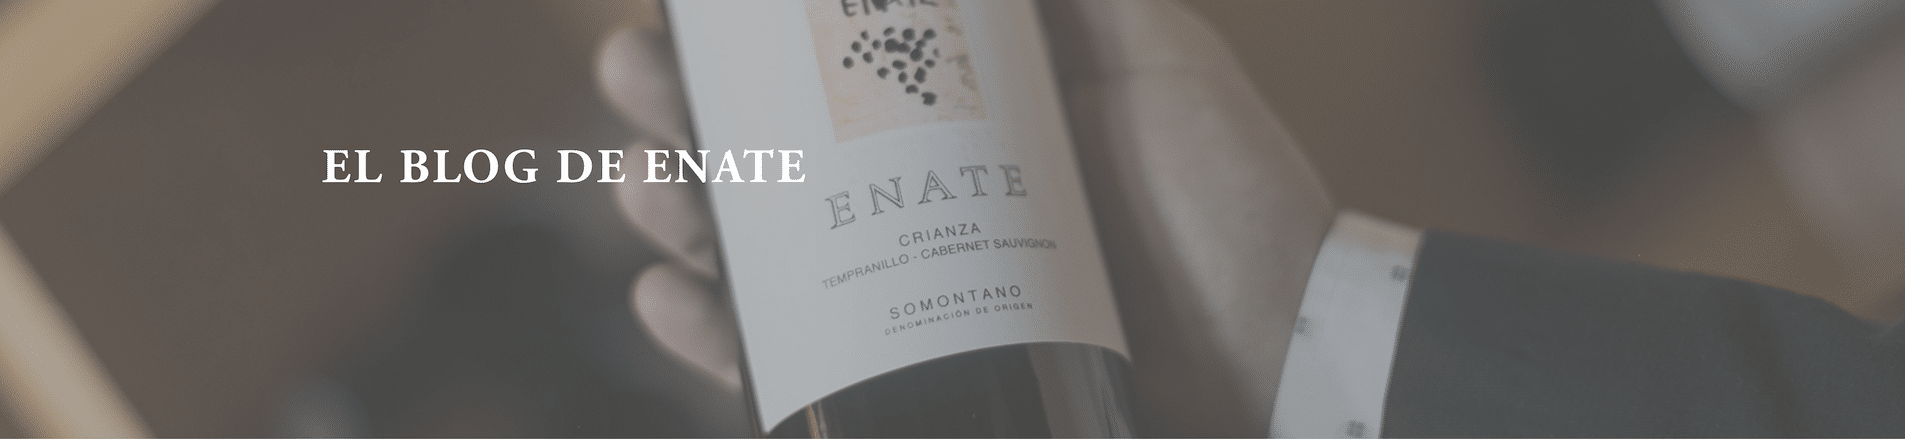 Entrevista en el Blog de Enate